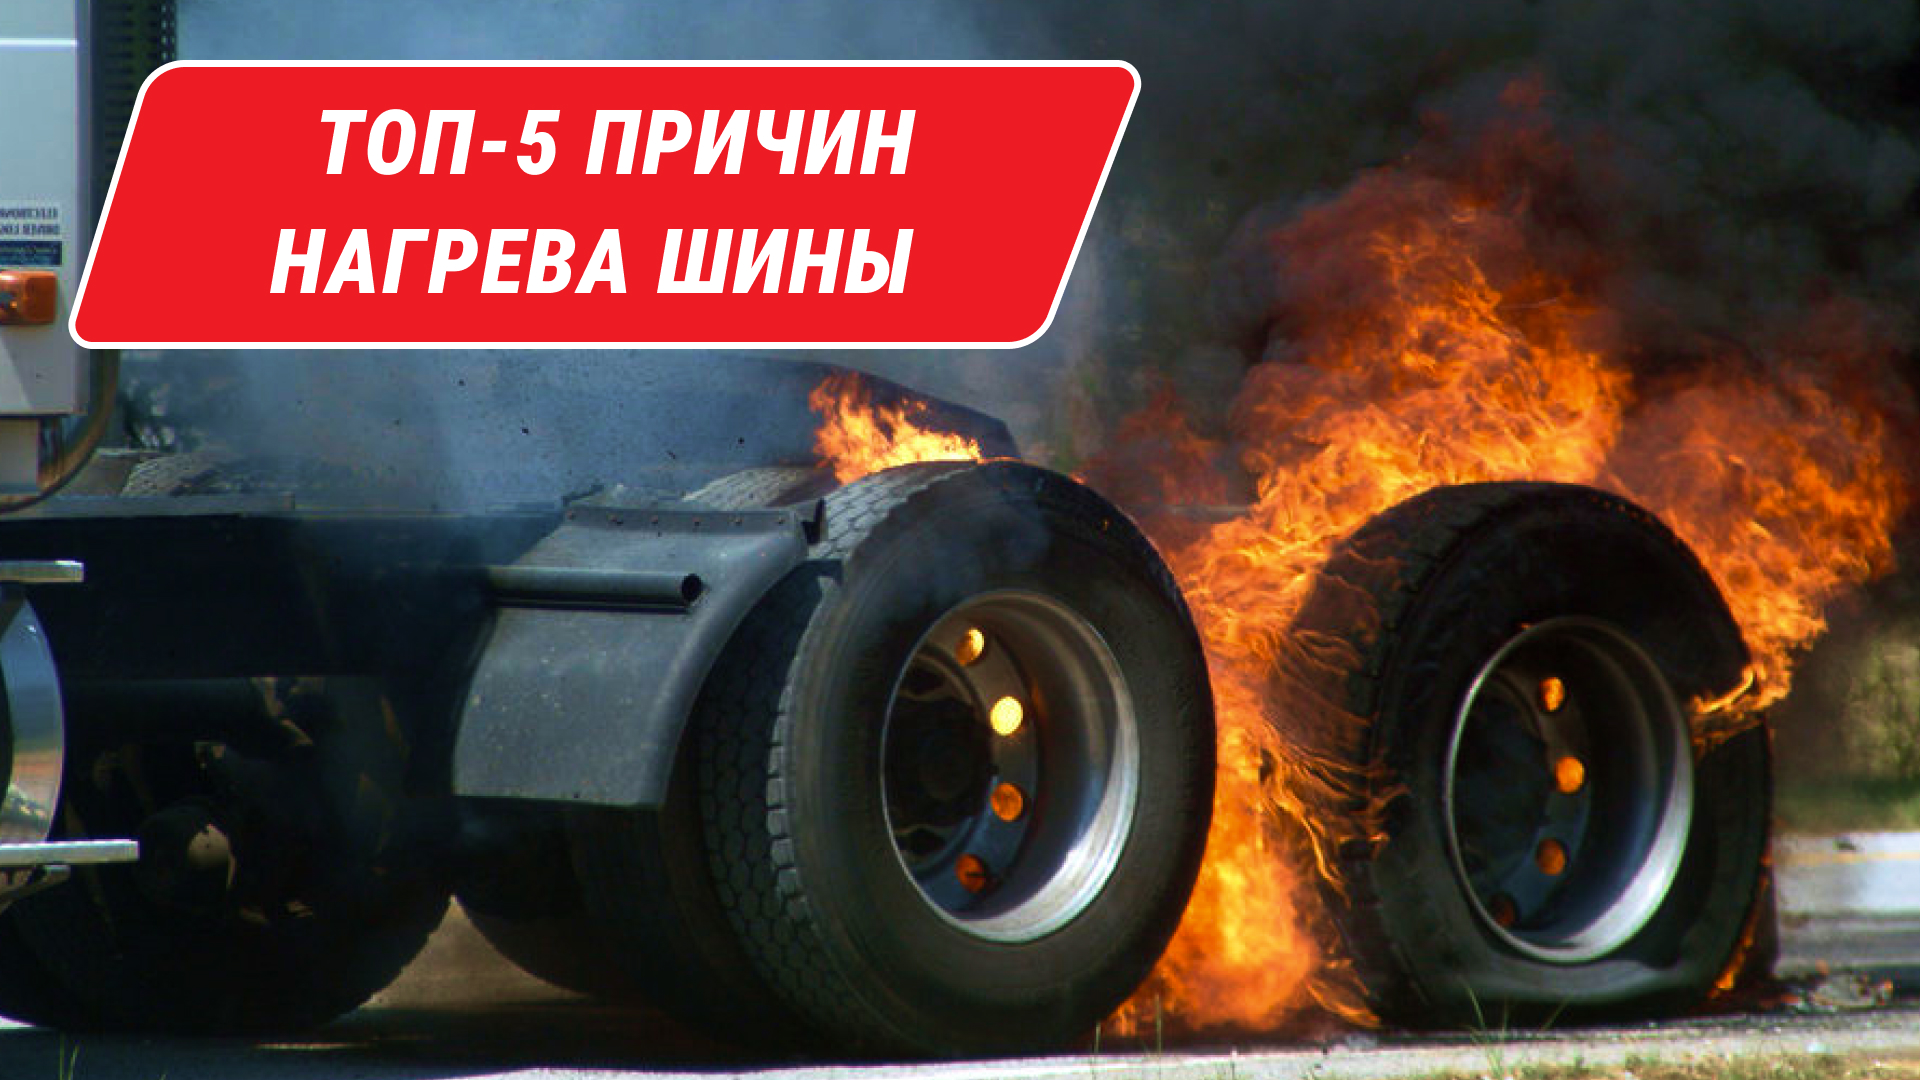 Защитите свои шины от взрыва [ТОП-5 советов] Причины нагрева шины? [Компания МВБ]